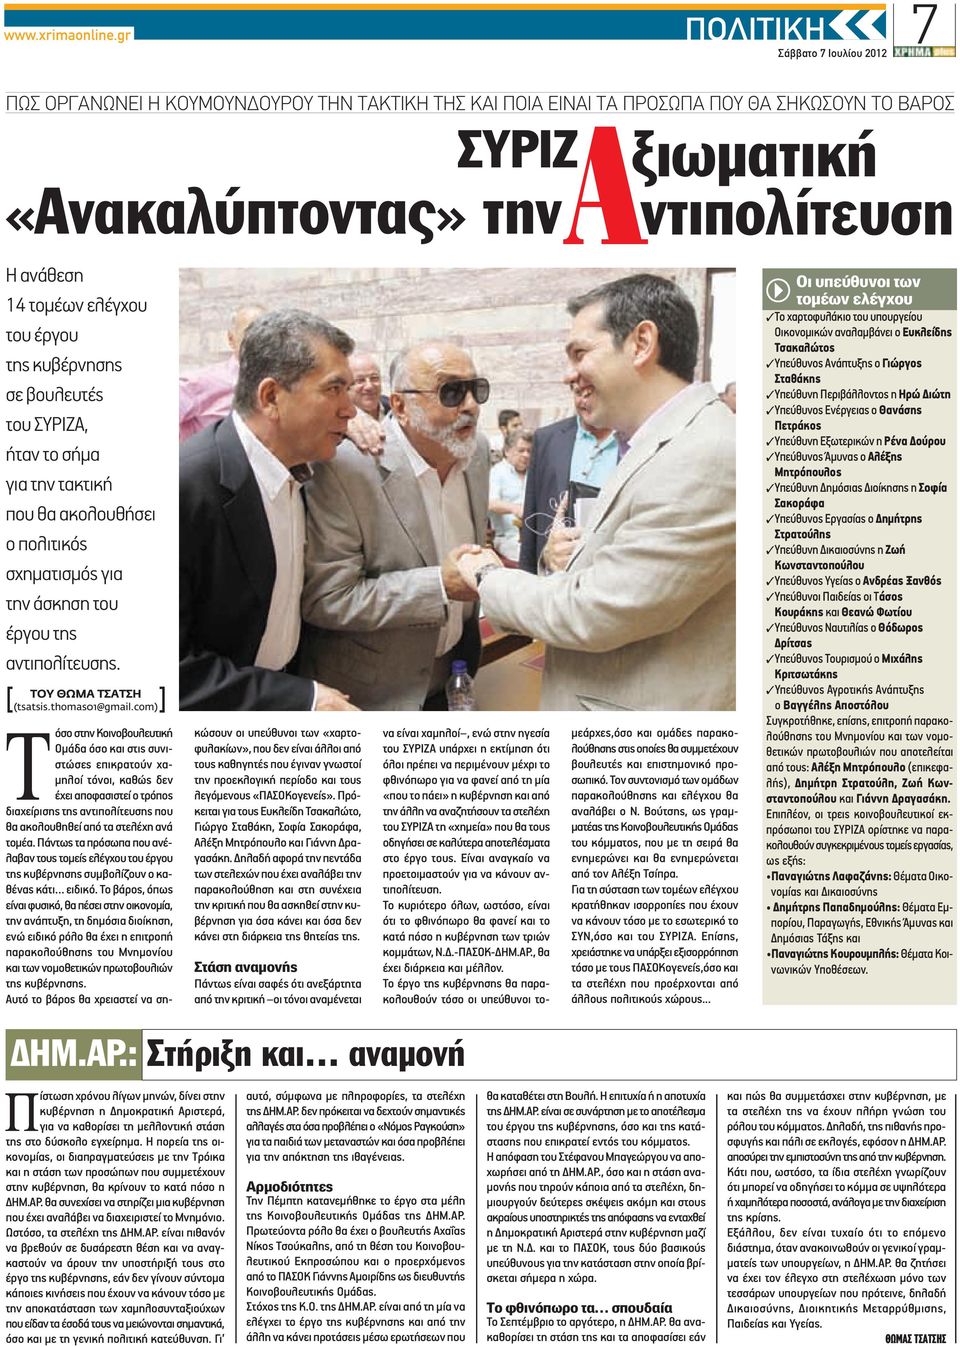 έργου της κυβέρνησης σε βουλευτές του ΣΥΡΙΖΑ, ήταν το σήμα για την τακτική που θα ακολουθήσει ο πολιτικός σχηματισμός για την άσκηση του έργου της αντιπολίτευσης. [ ] ΤΟΥ ΘΩΜΑ ΤΣΑΤΣΗ (tsatsis.